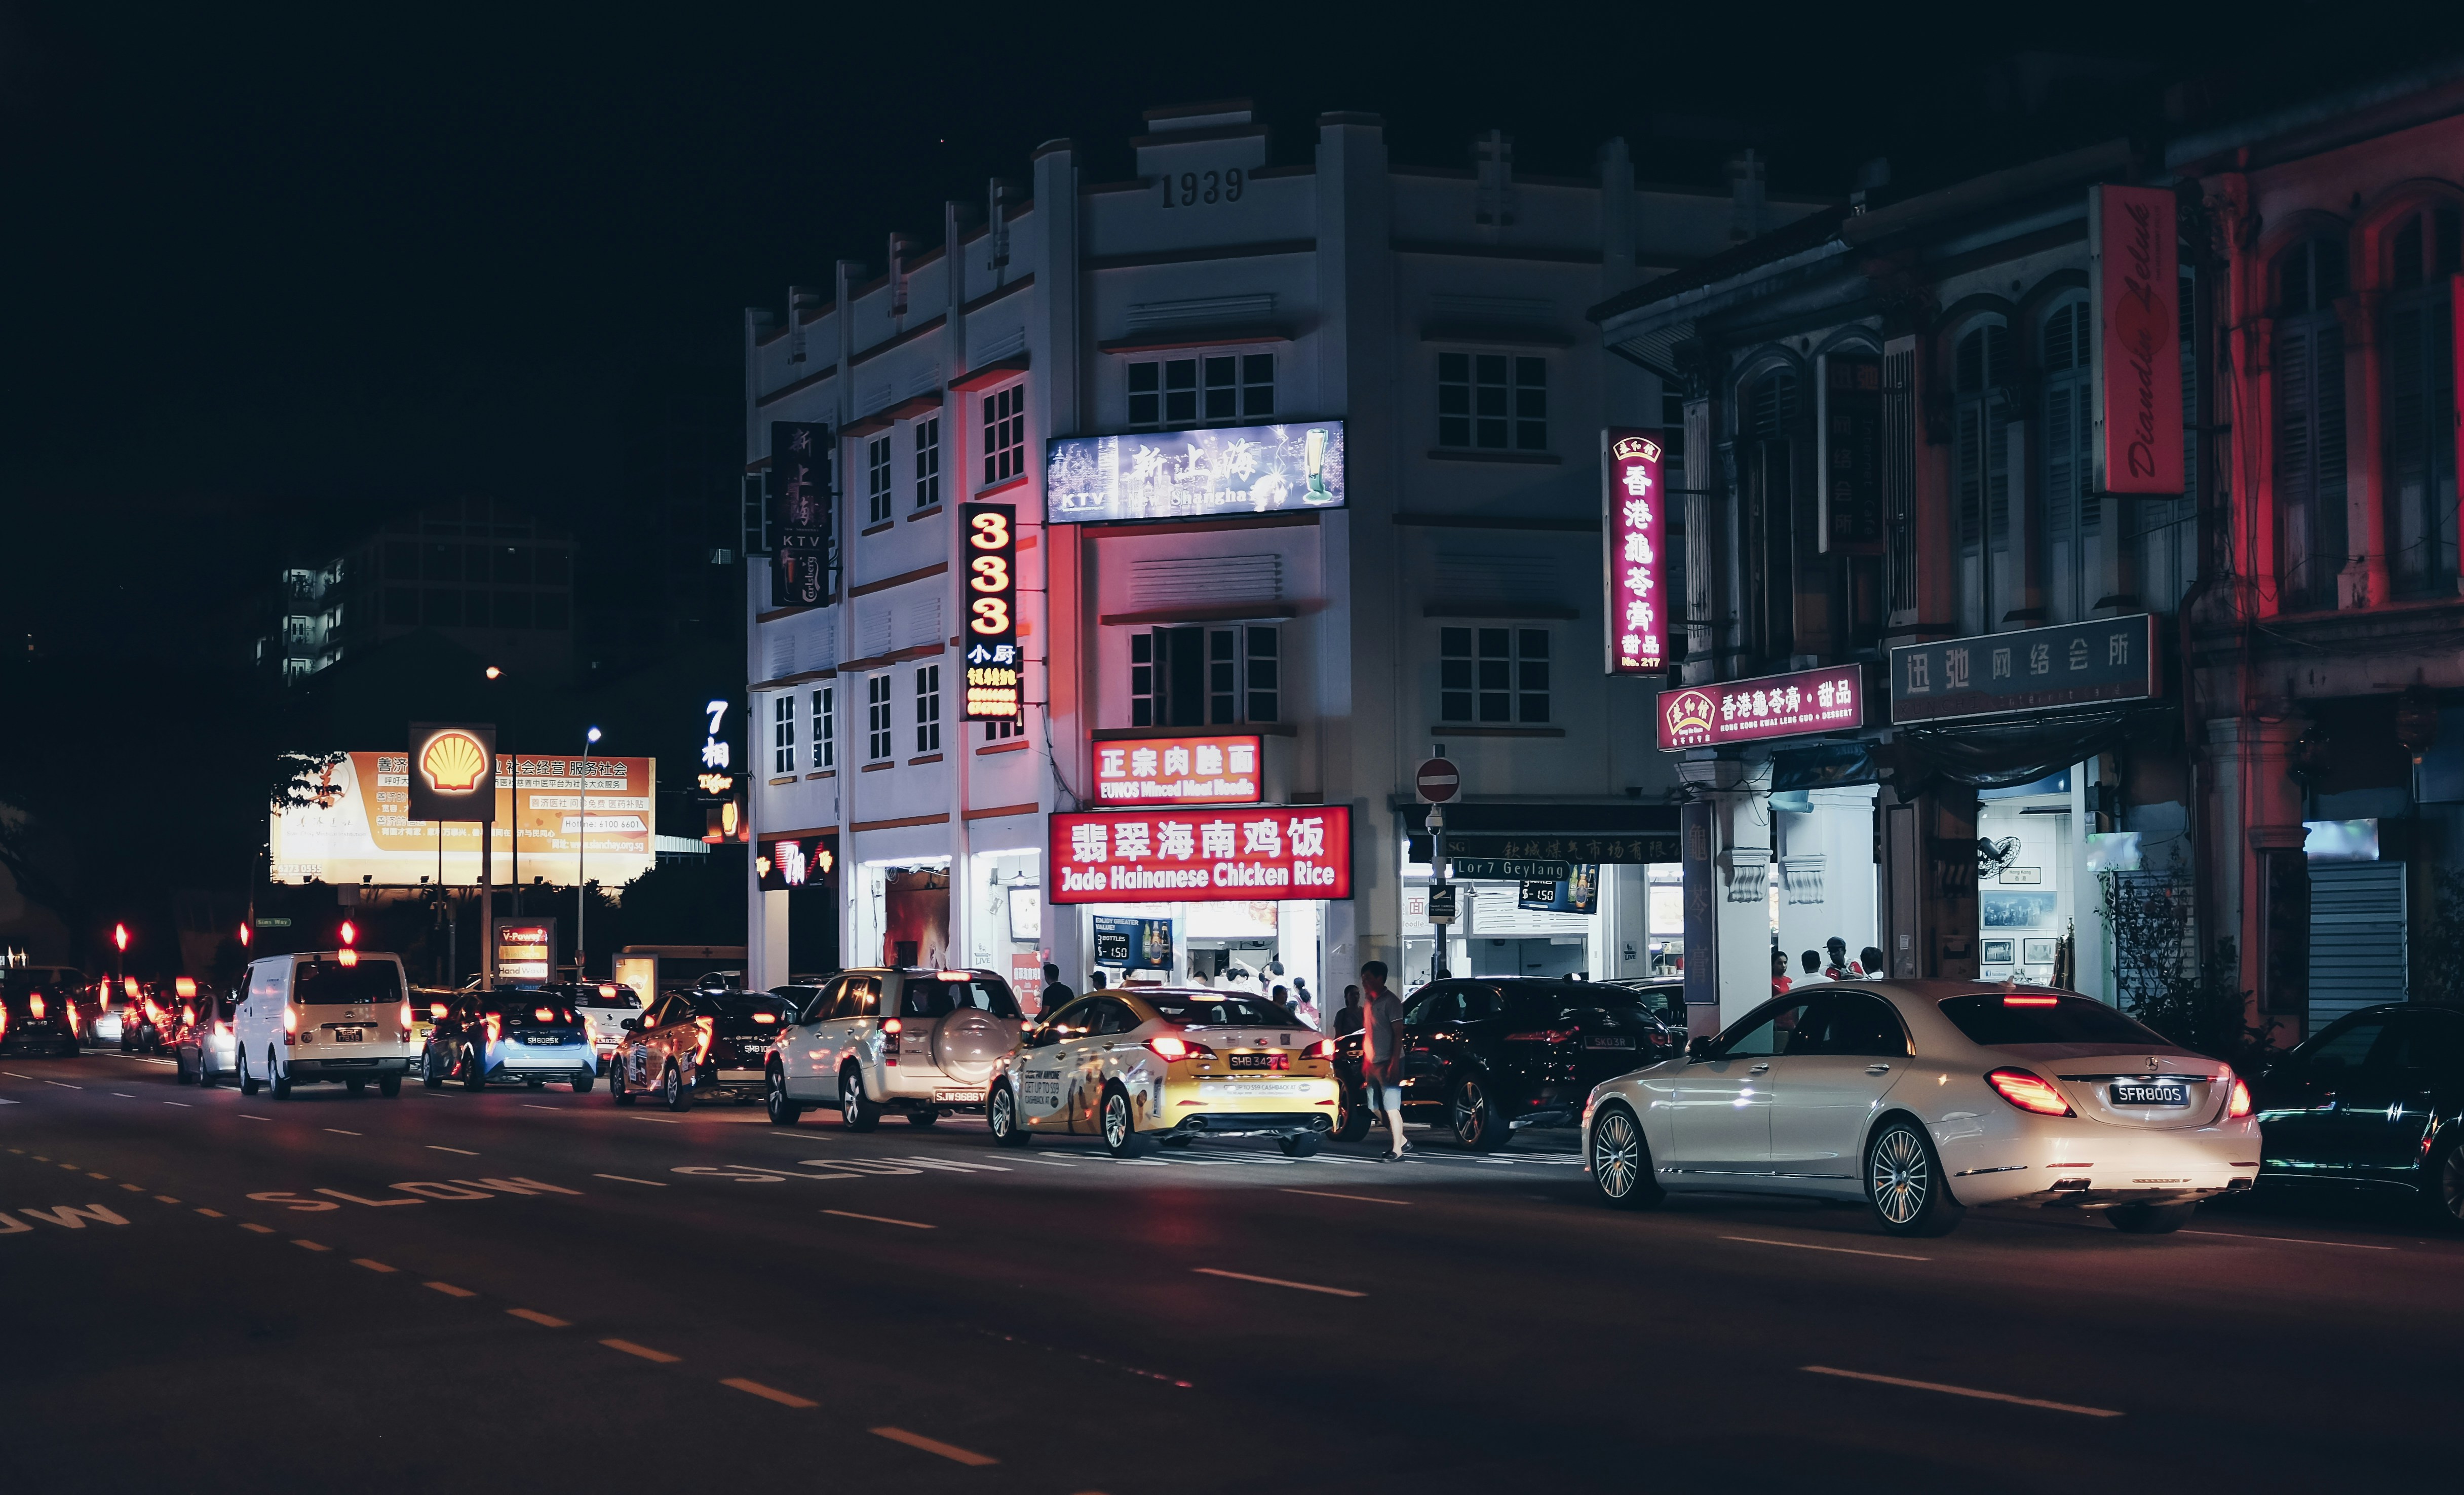 The Chinatown